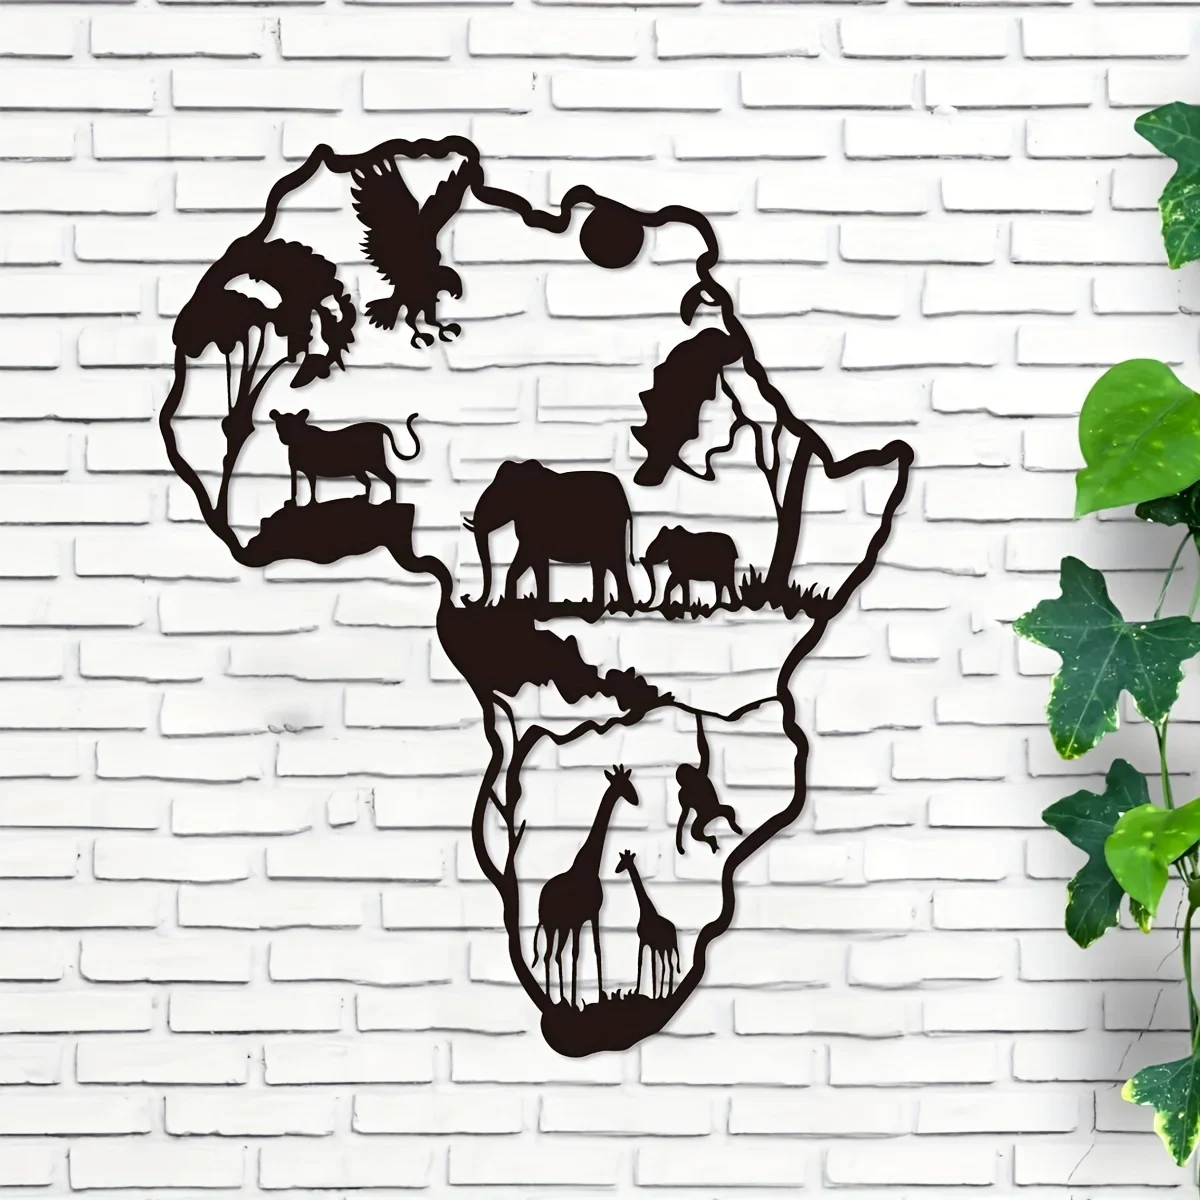 

Карта с африканскими животными, железная комнатная и уличная, поделки для украшения помещений, отлично подходит для гостиной, спальни, прихожей, 11,81*9,66 дюйма